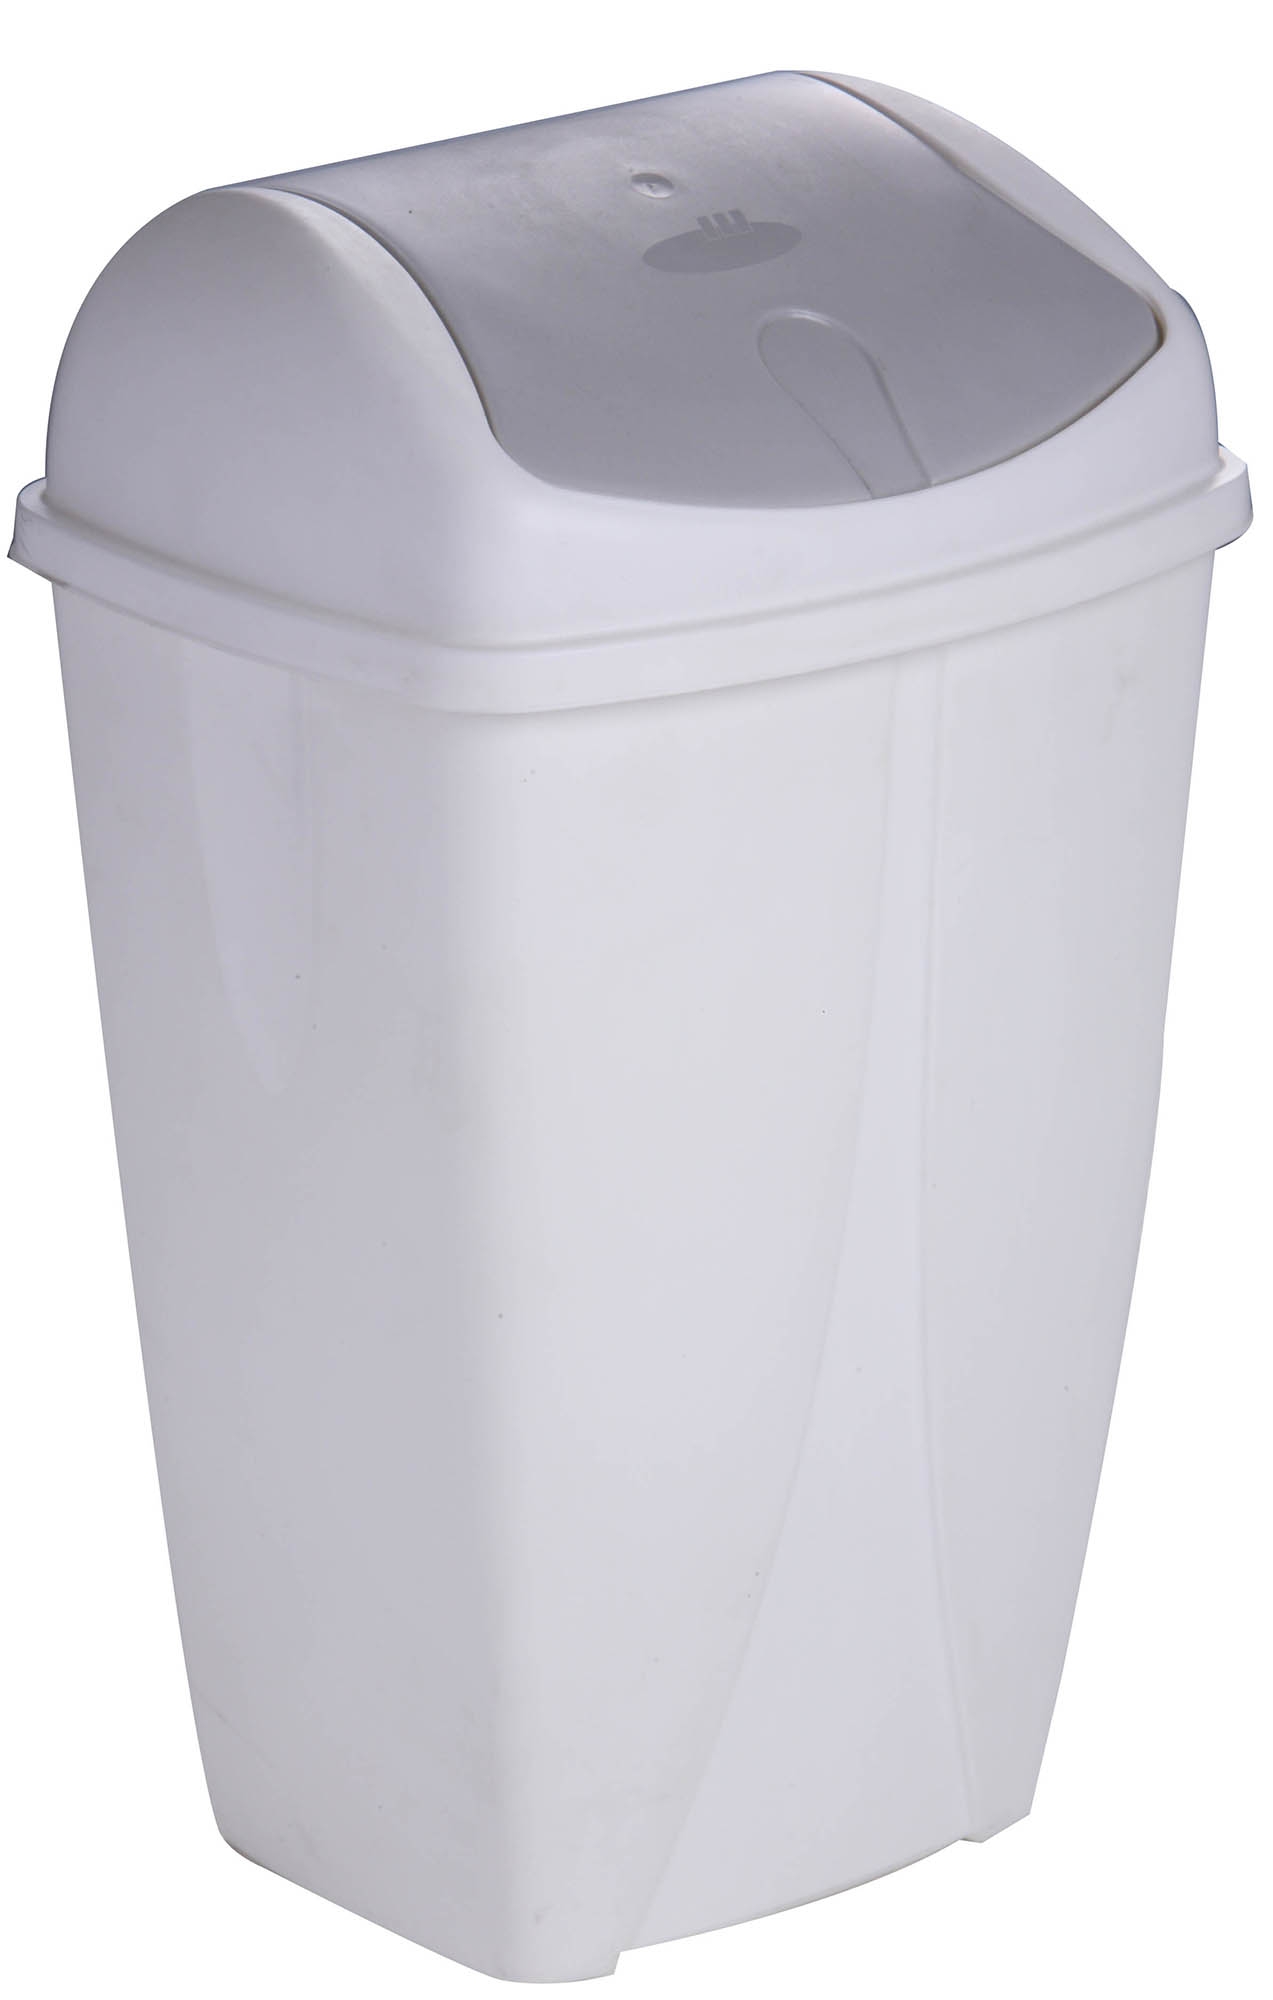 2x Poubelles en plastique / poubelles blanches 50 litres avec